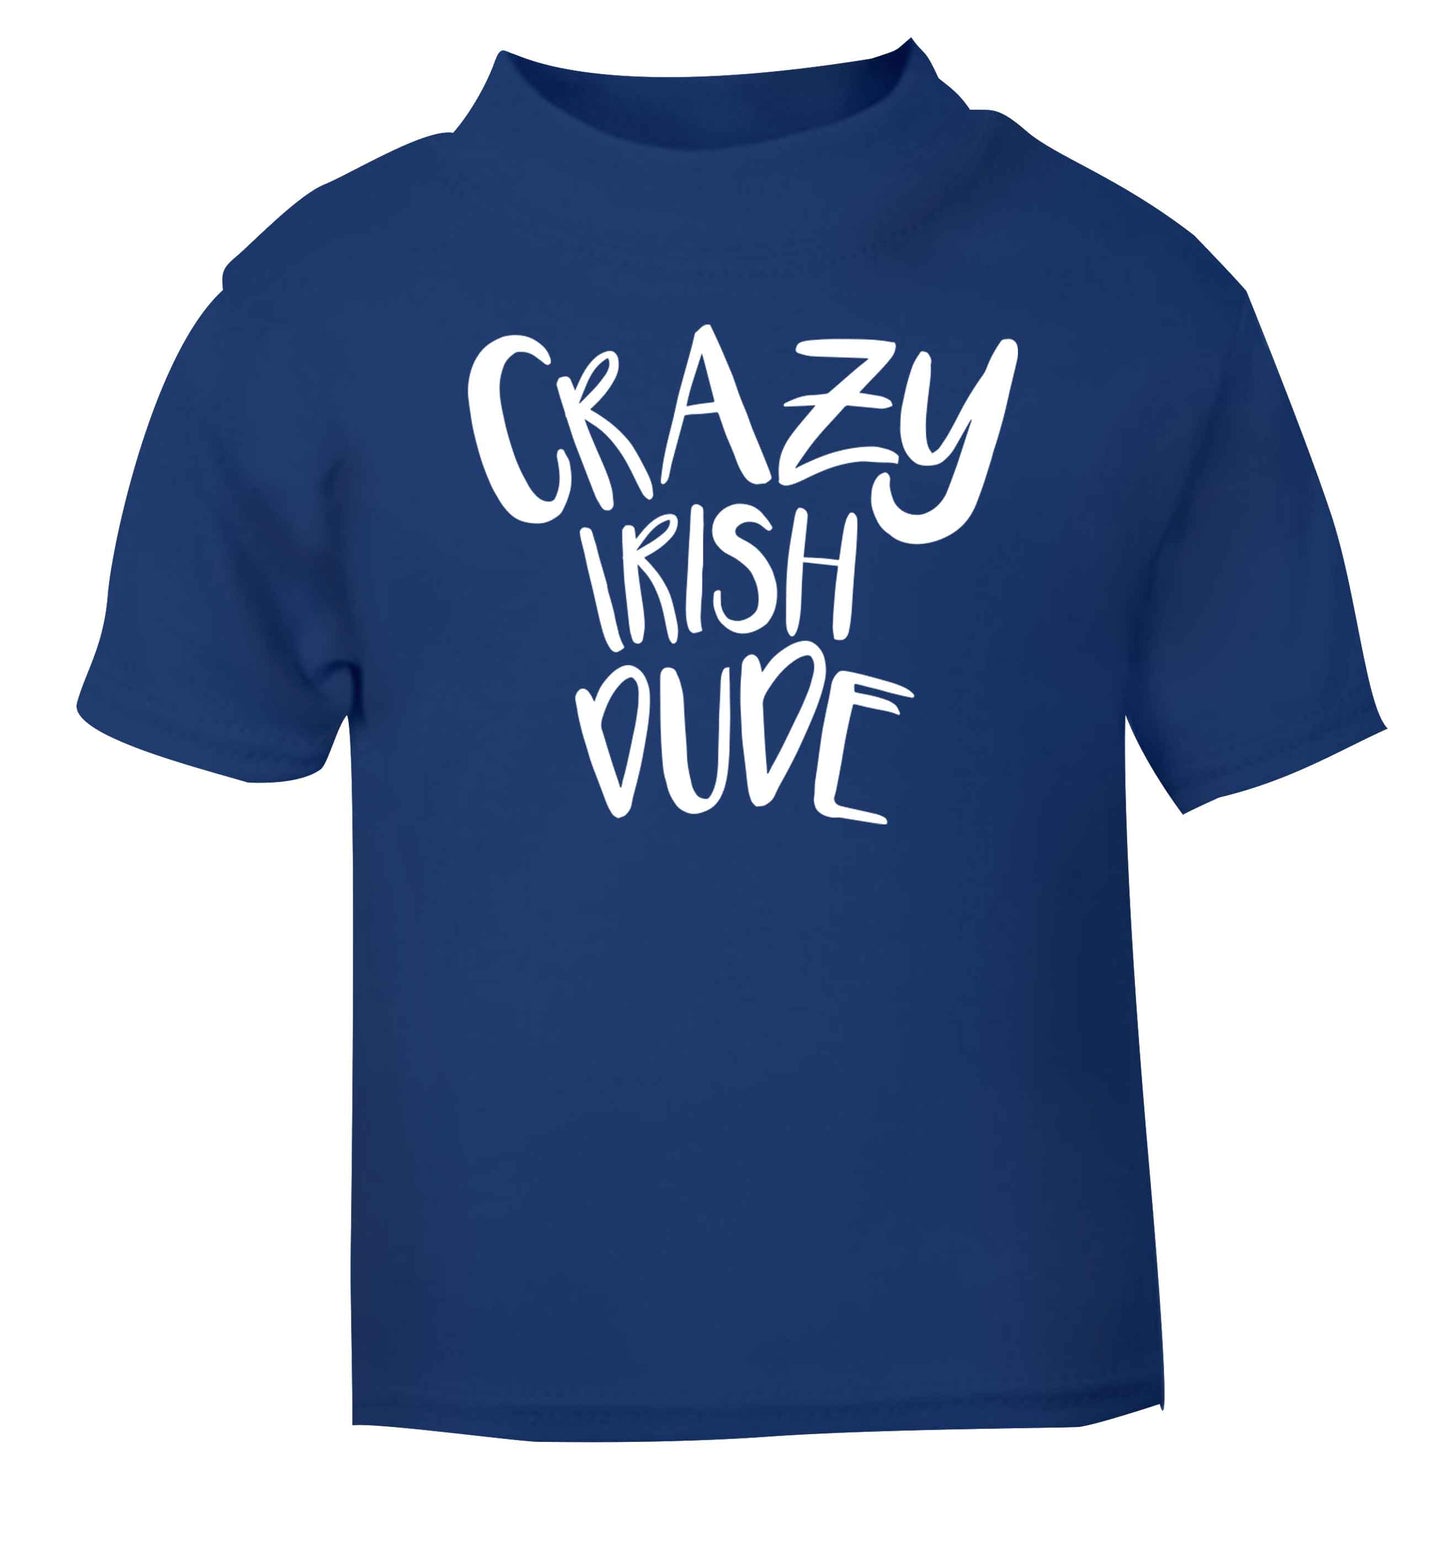 Crazy Irish dude blue baby toddler Tshirt 2 Years